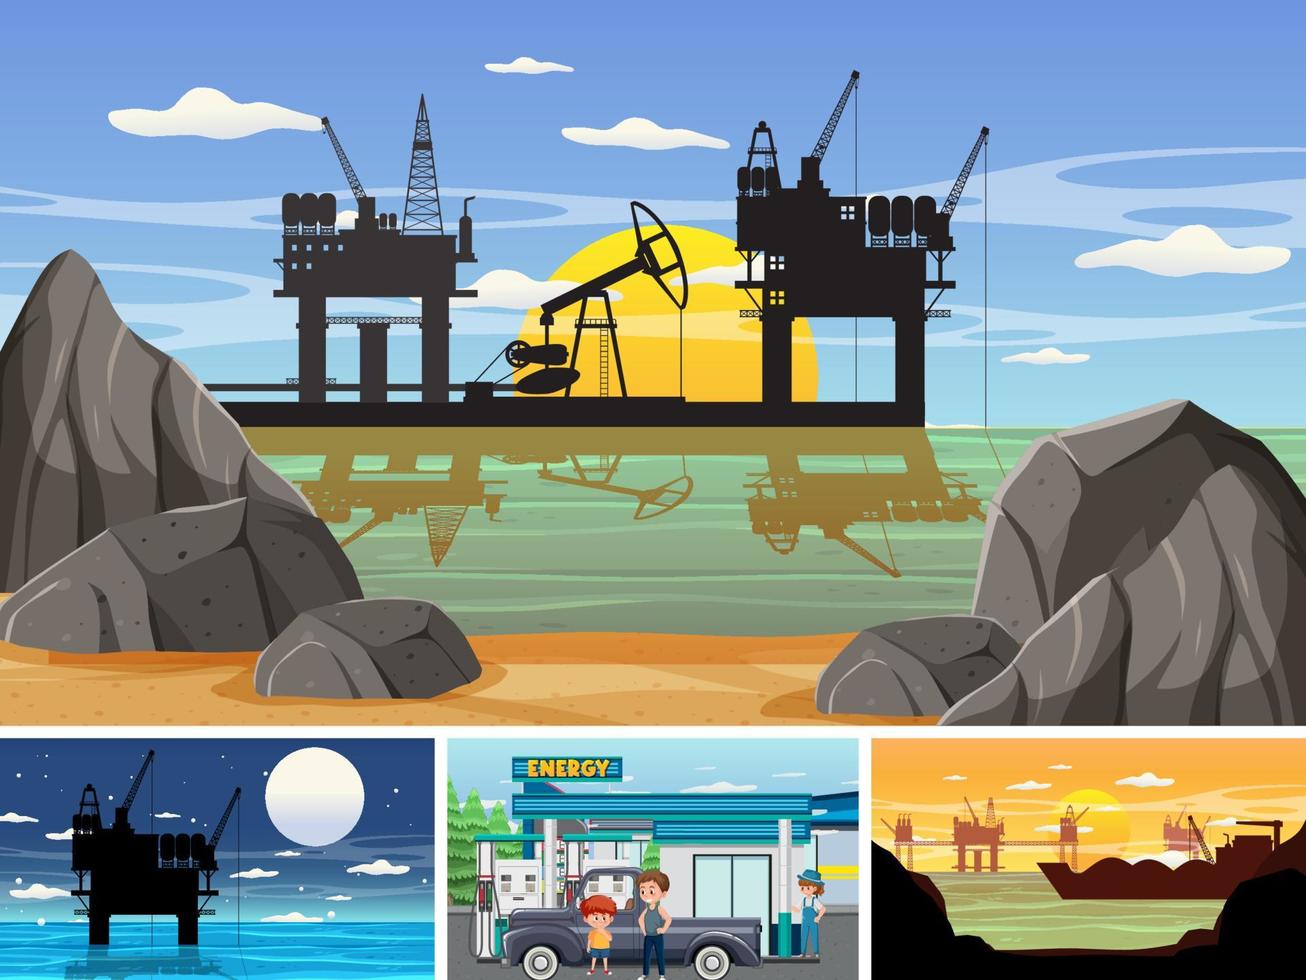 quatre scènes différentes de l'industrie pétrolière vecteur